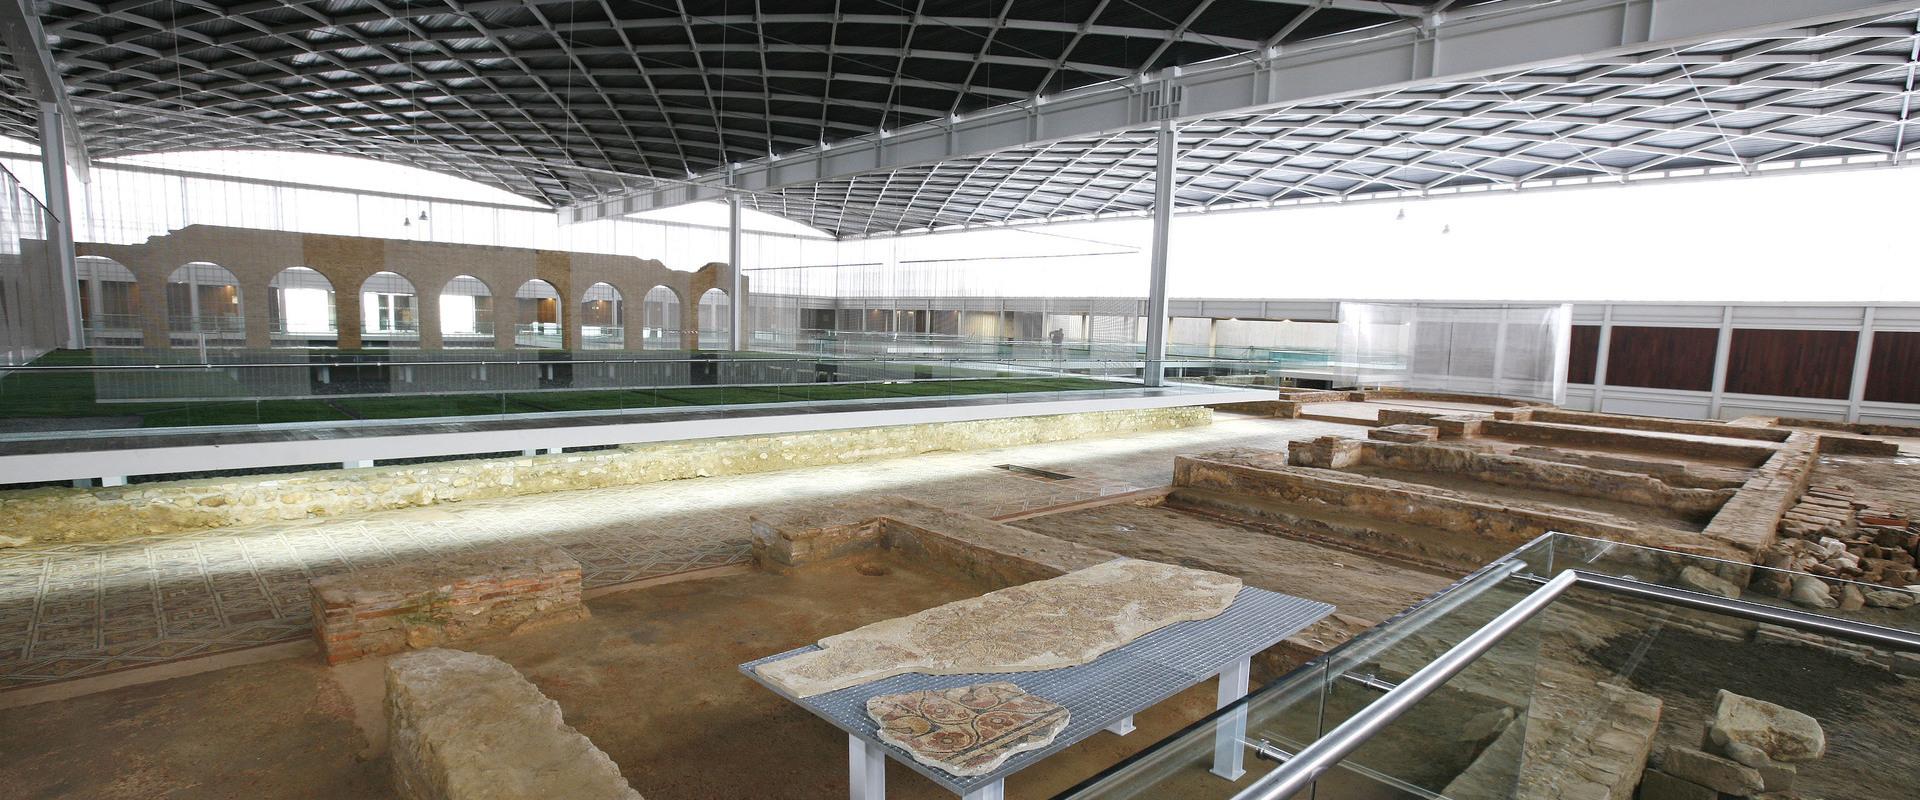 Visión general del interior de la villa romana La Olmeda desde la zona norte